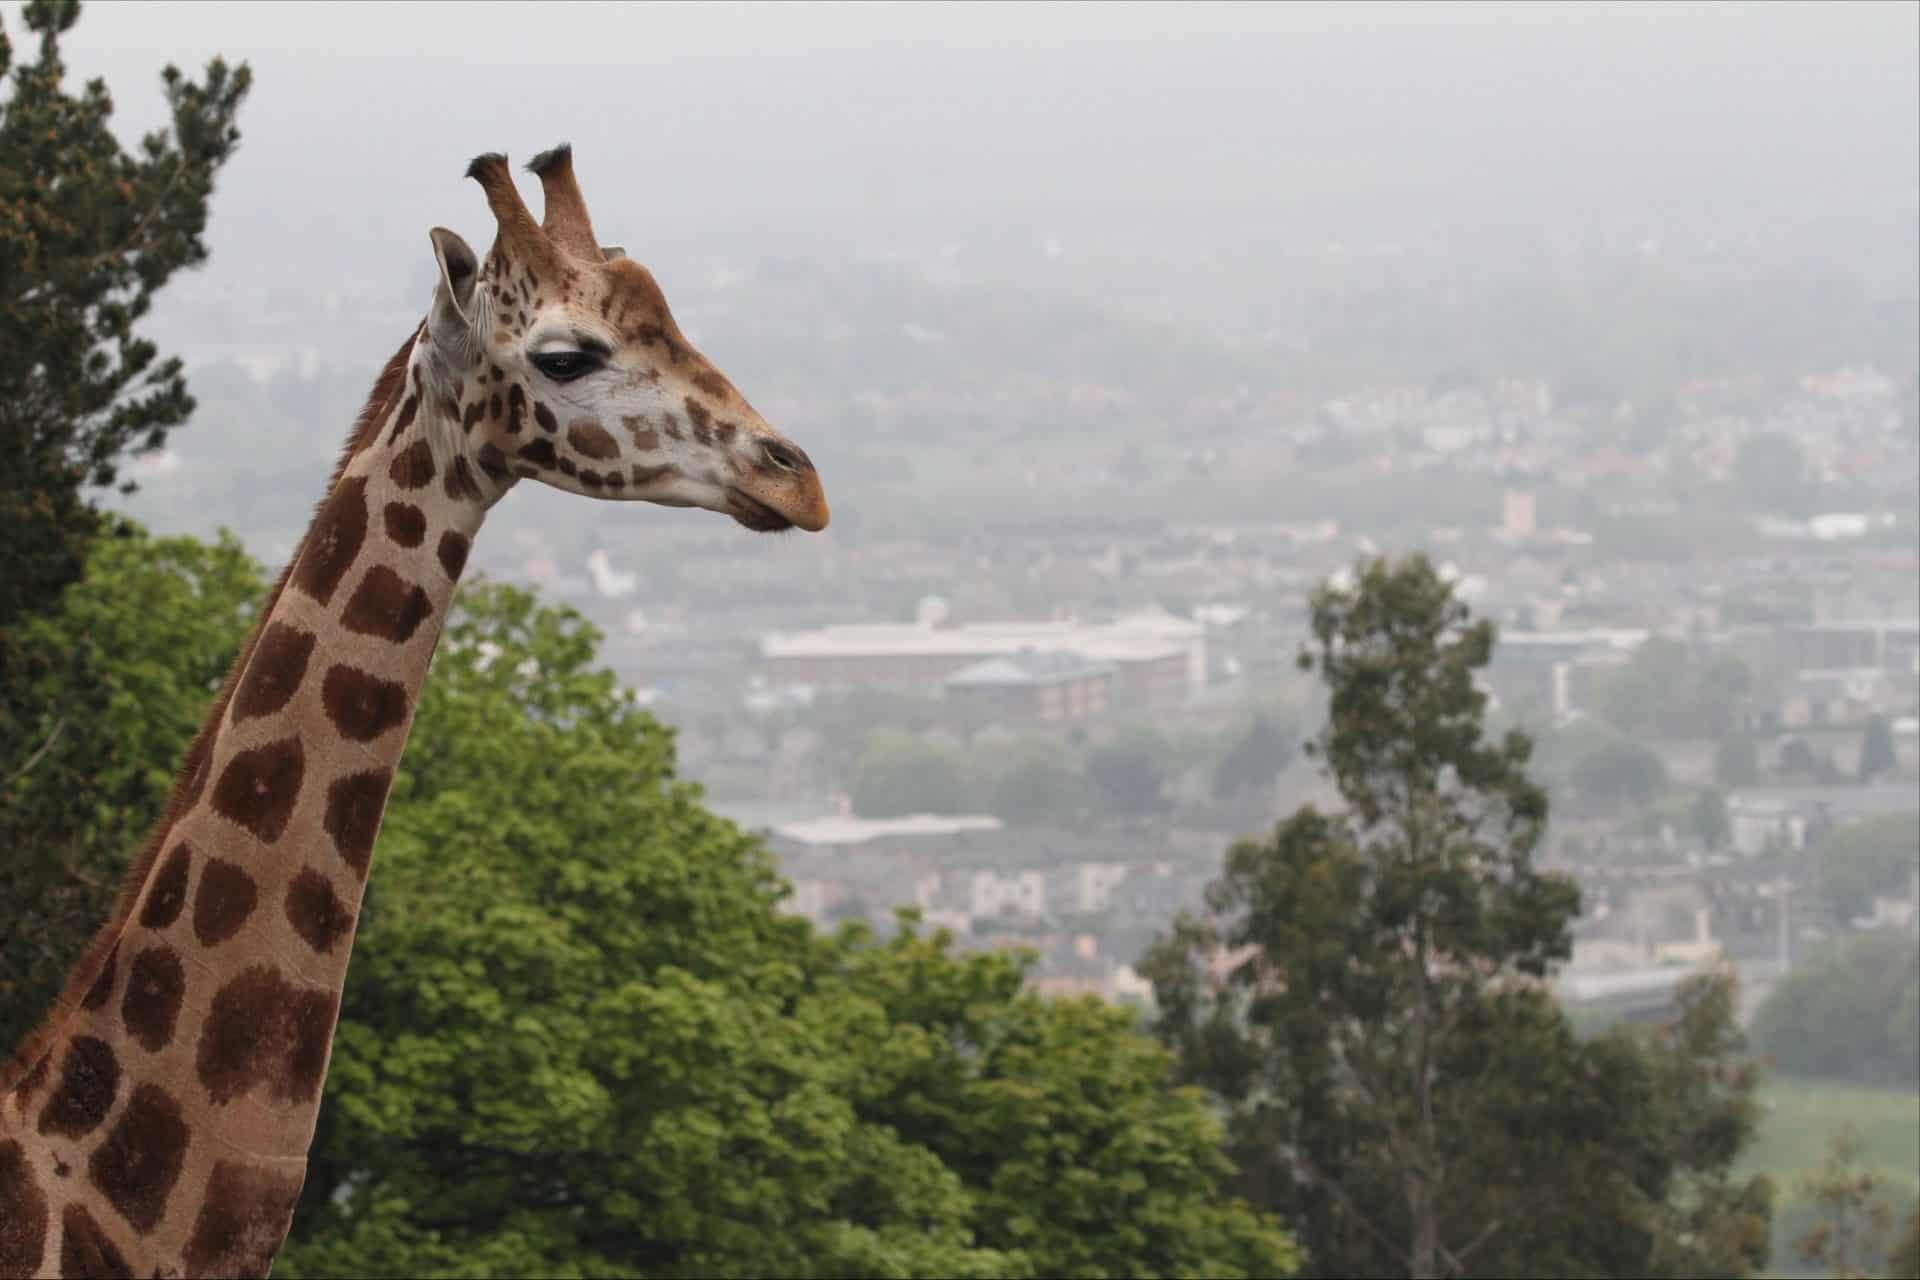 Edinburgh Zoo's giraffe, Arrow